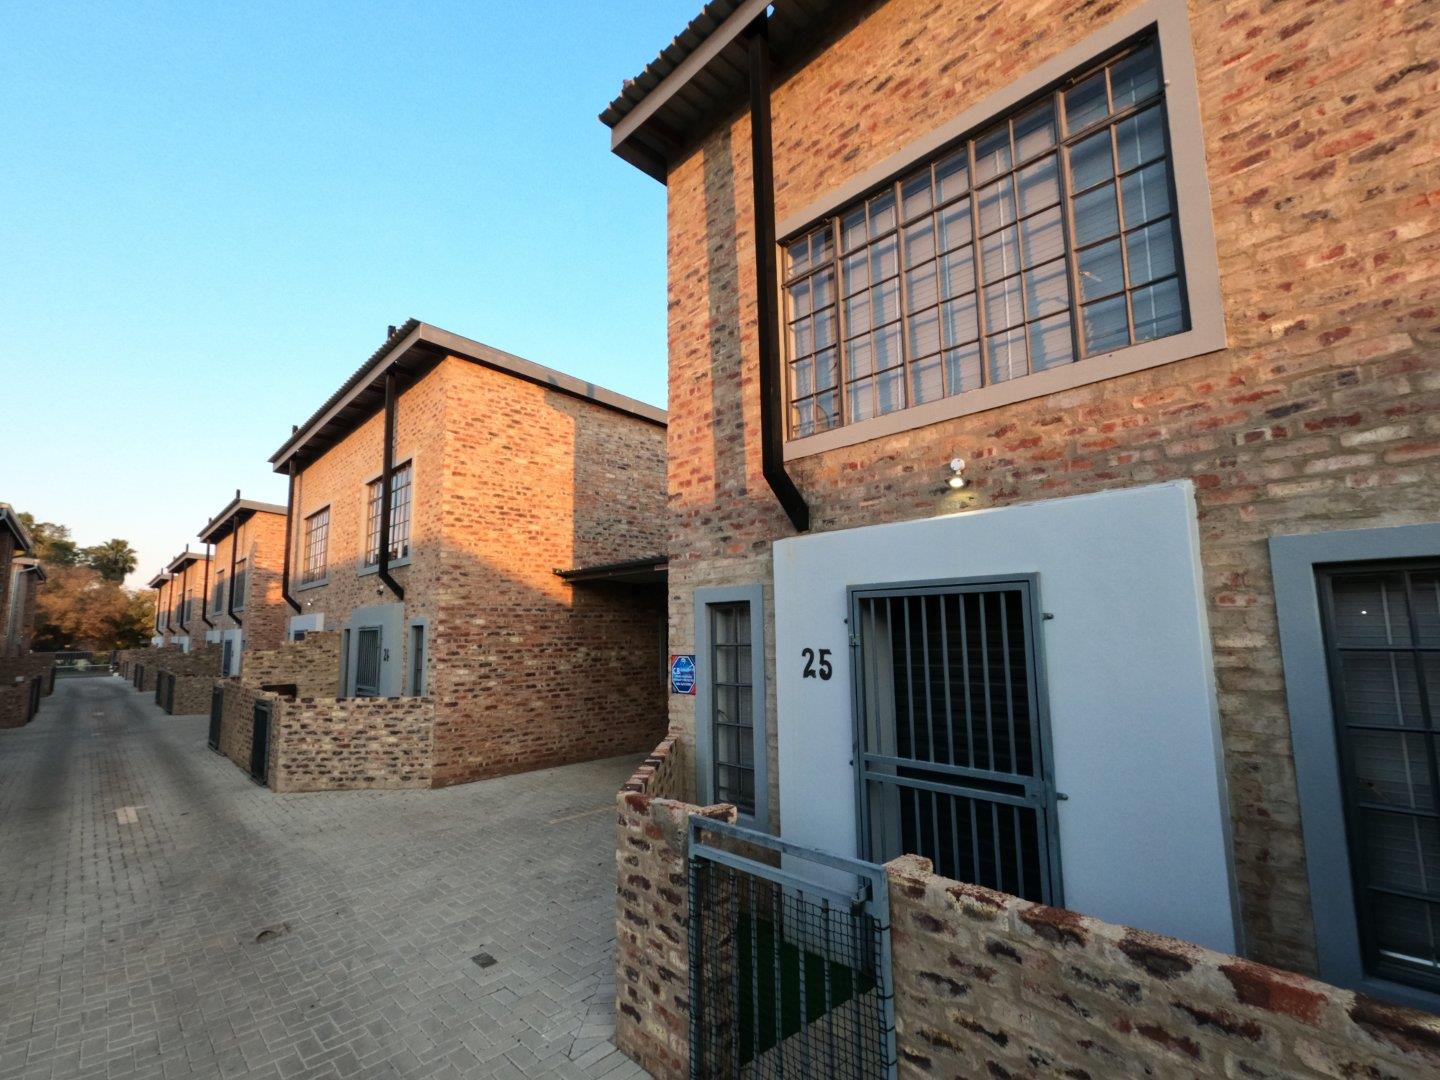 1 Bedroom Townhouse to rent in Die Bult - Goud Street 51 Potchefstroom